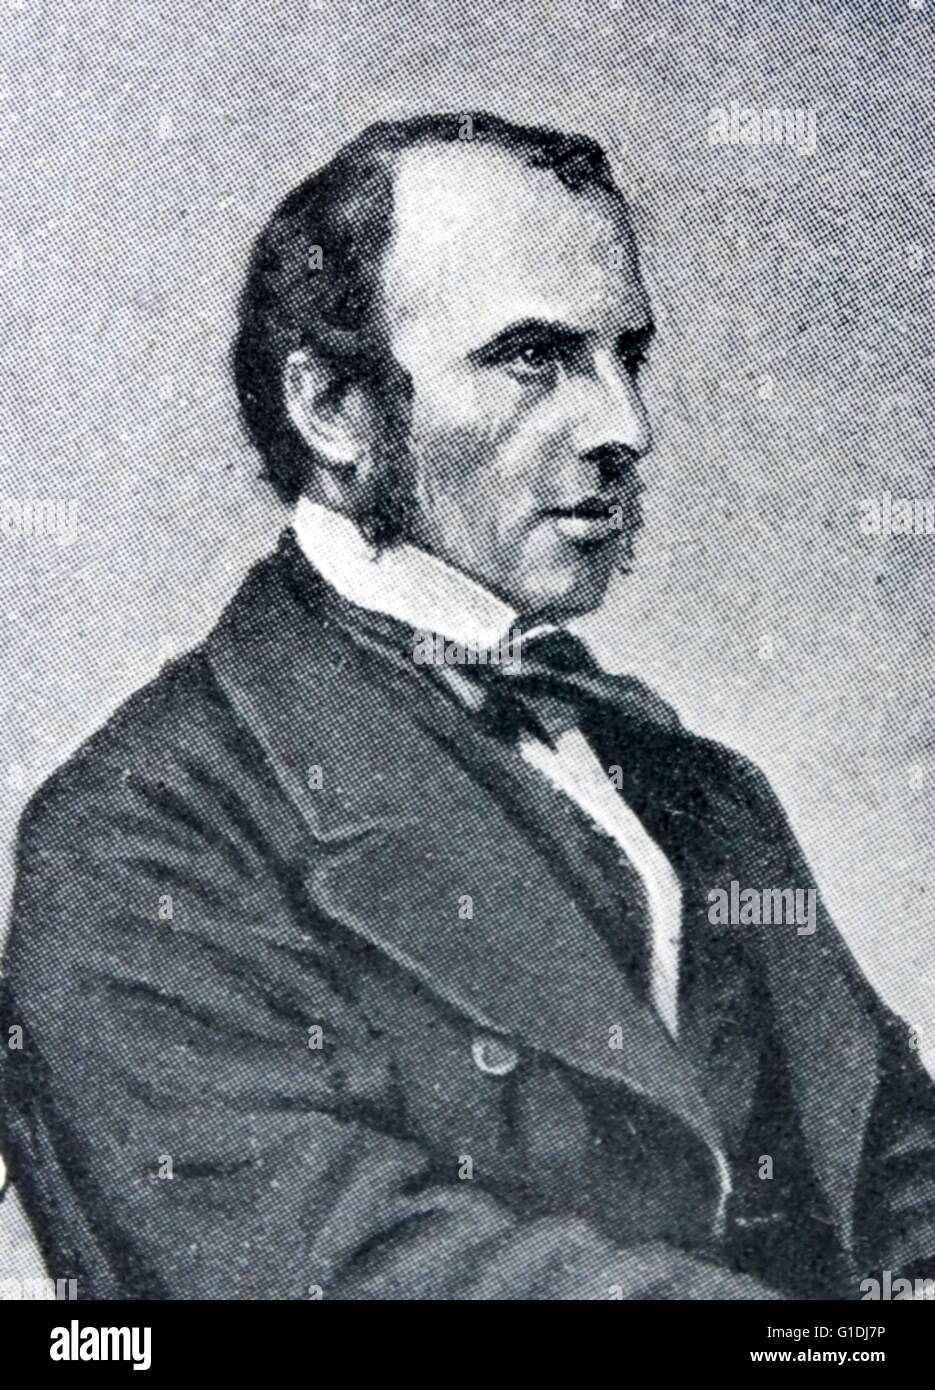 John Charles Canning, 1er comte Canning KG GCB GCSI PC (14 décembre 1812 - 17 juin 1862), connu sous le nom de vicomte Canning de 1837 à 1859, était un homme d'état et gouverneur général de l'Inde au cours de la rébellion indienne de 1857. Banque D'Images